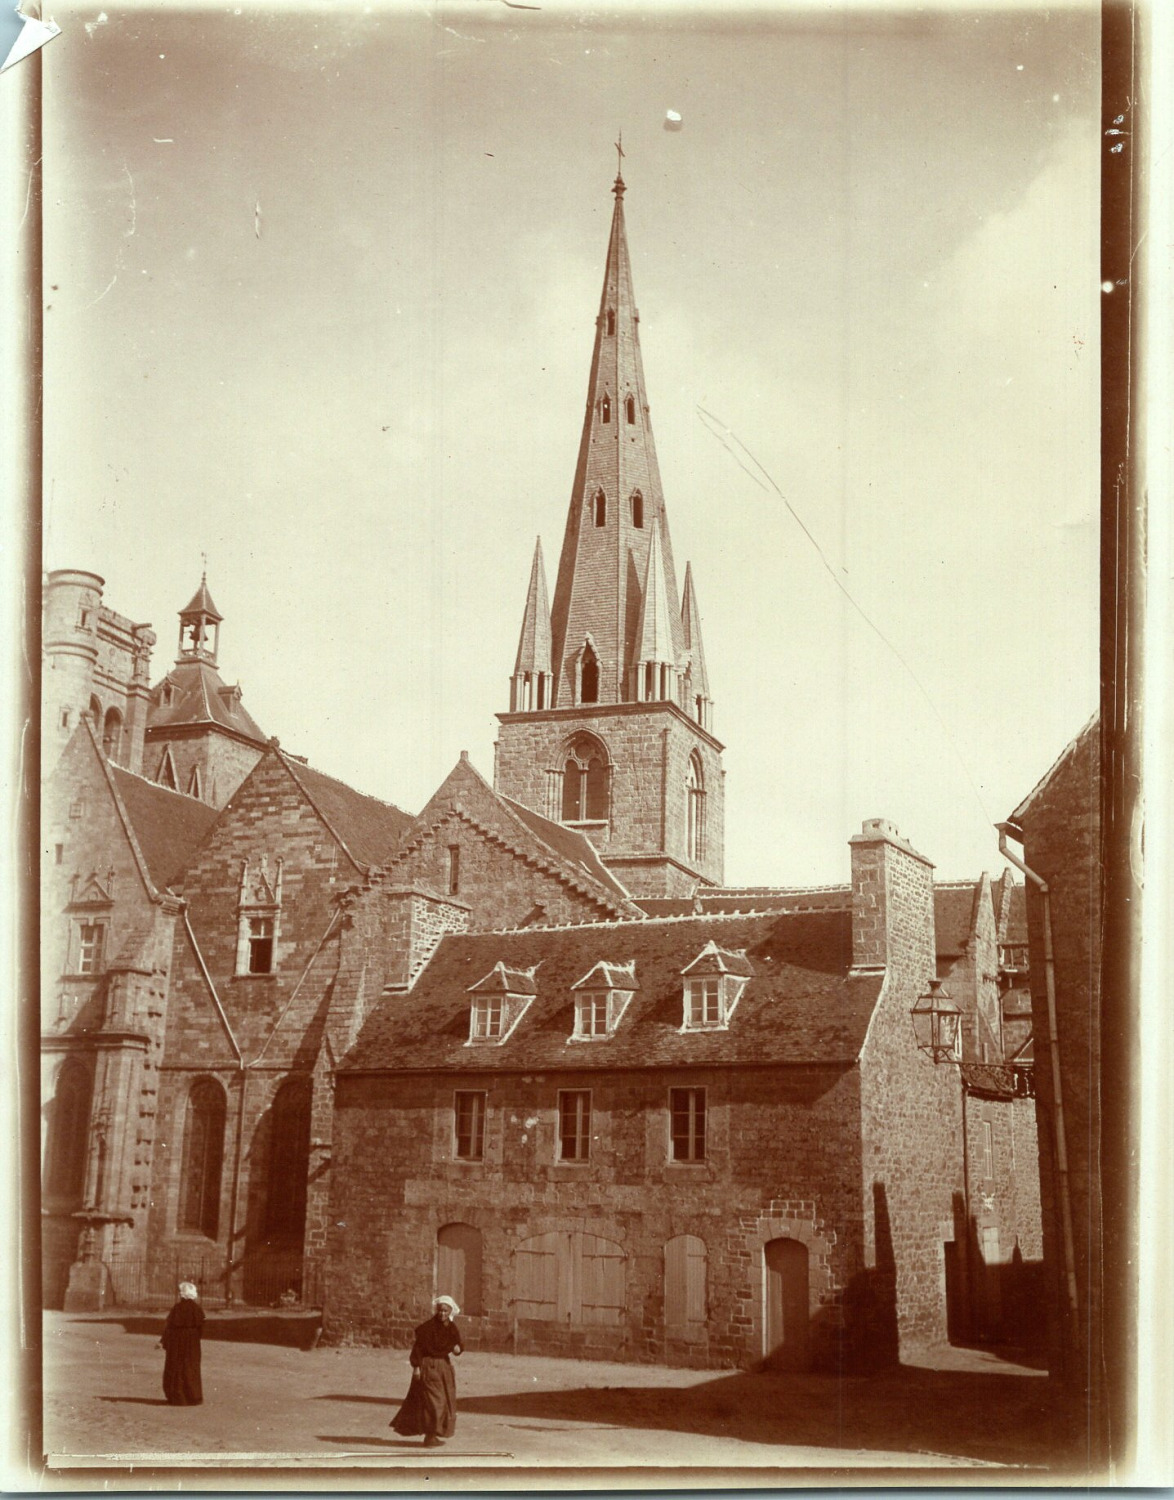 France, Guingamp, view of the Basilica of Notre-Dame de Bon-Secours, vintage print, 